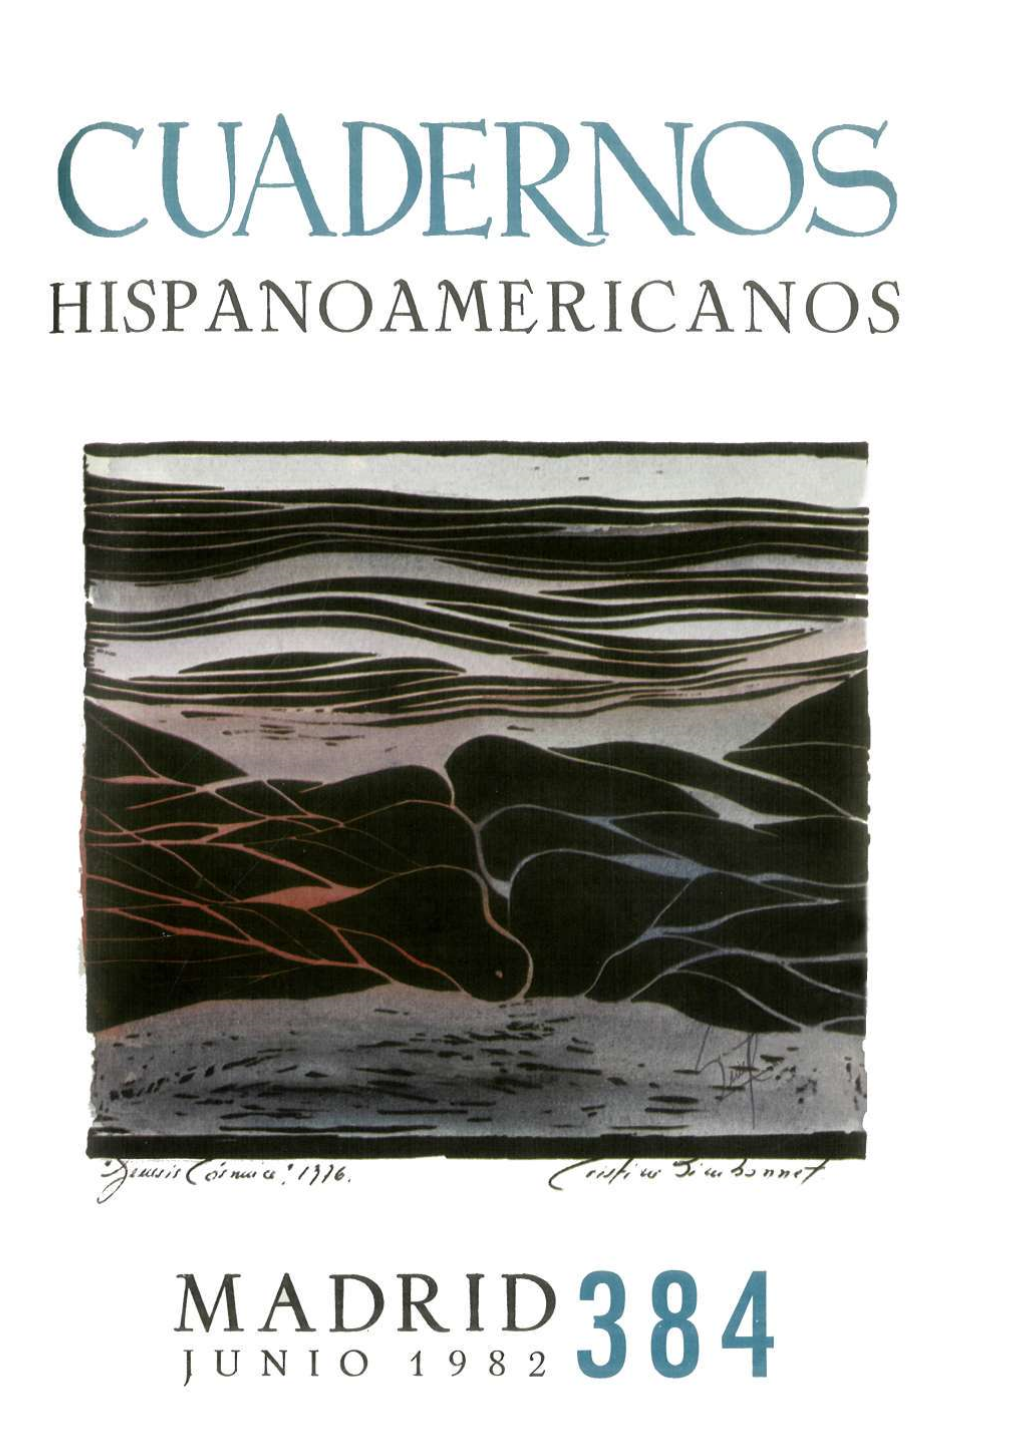 Cuadernos Hispanoamericanos Nº 384, Junio 1982